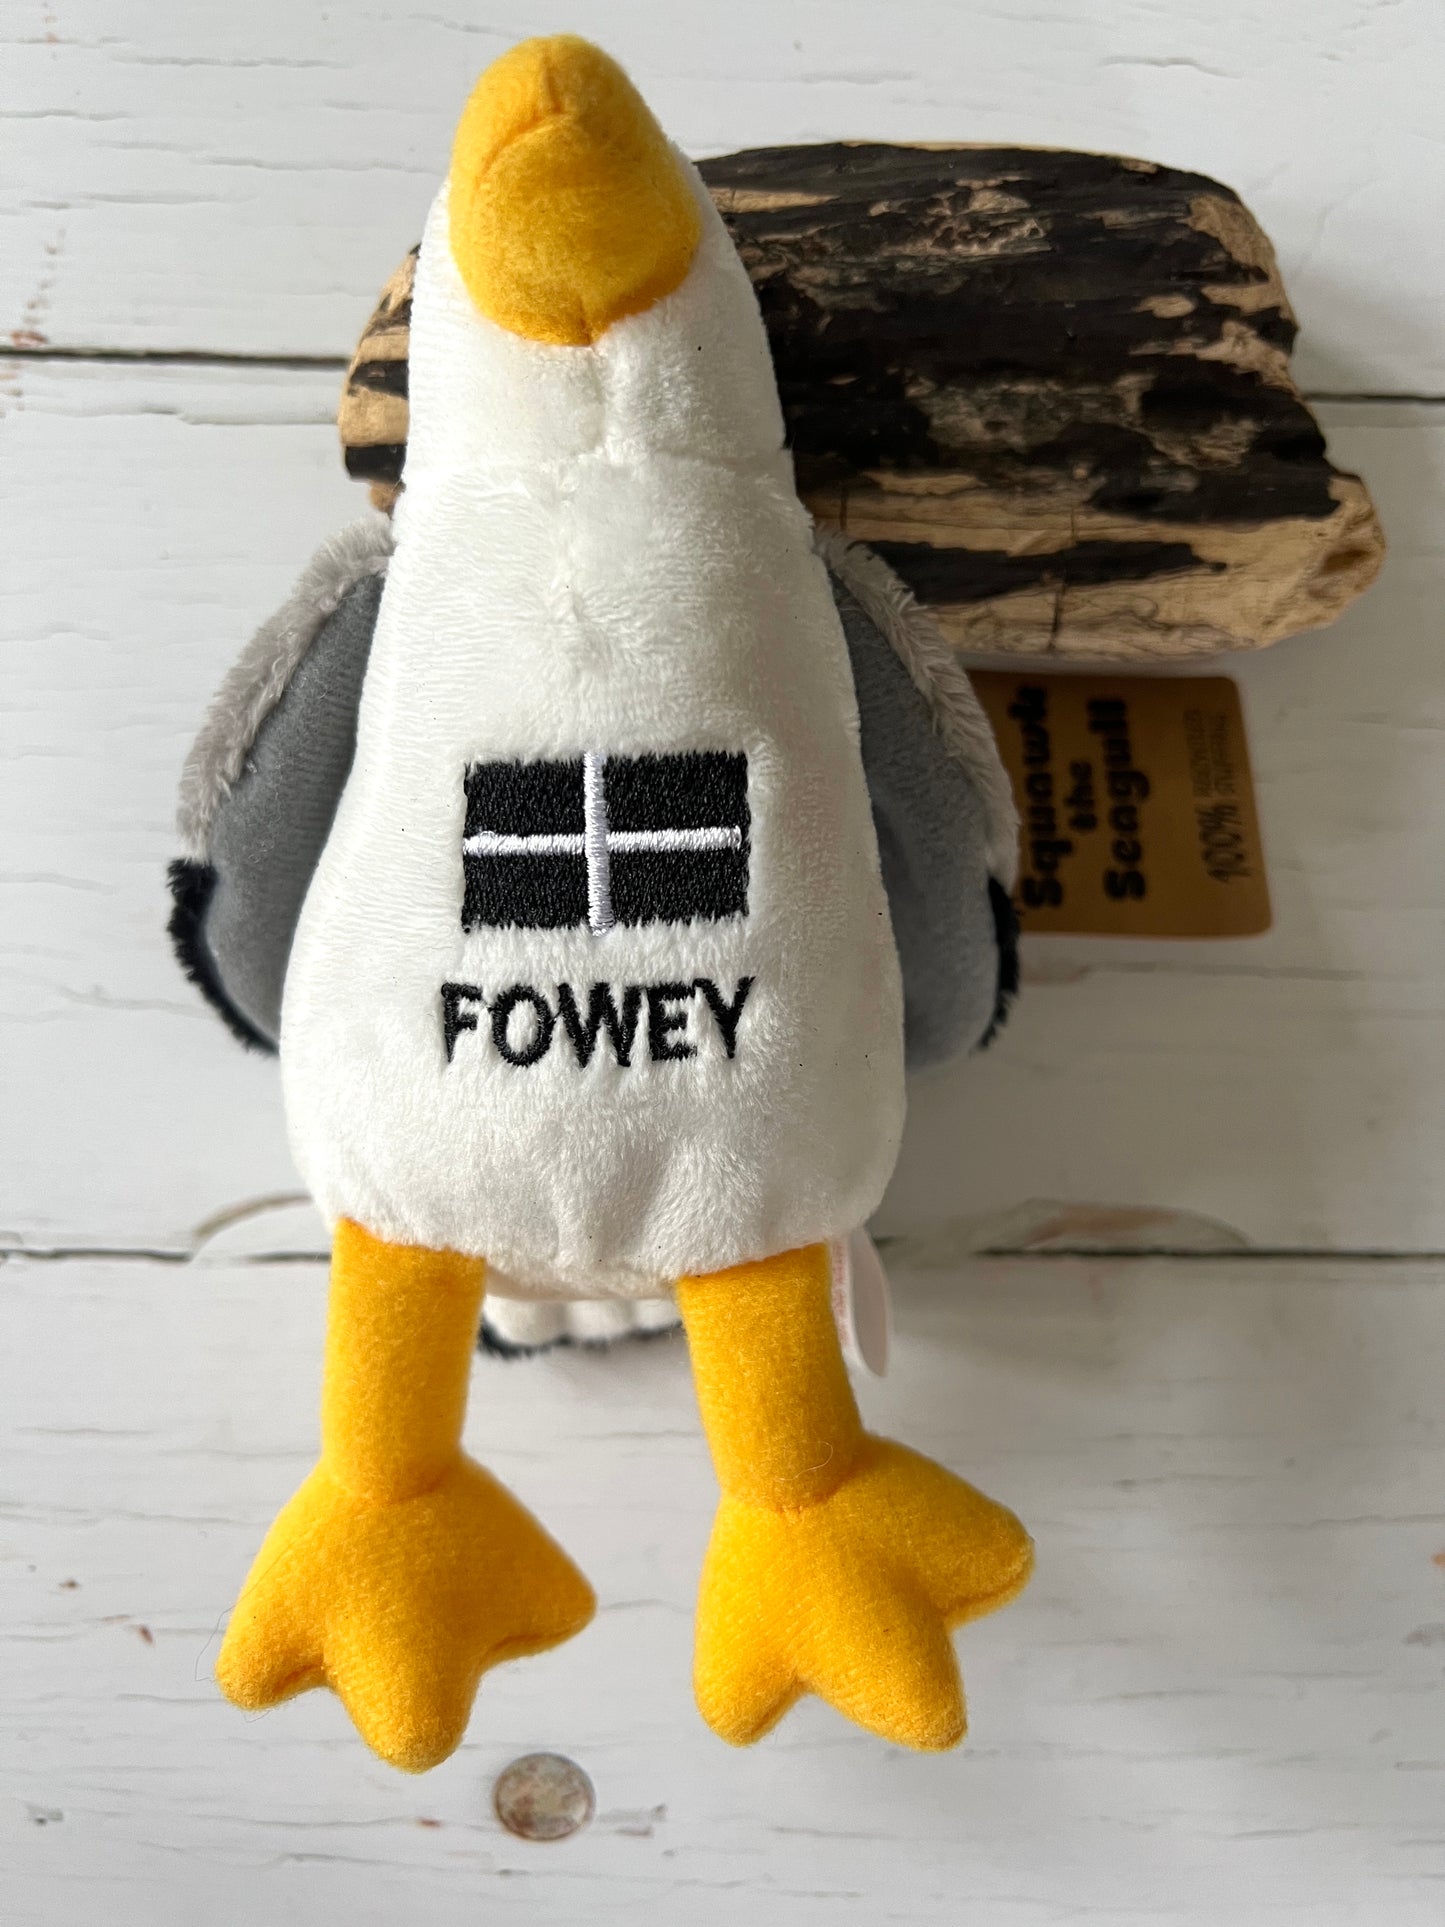 Fowey Seagull Soft Plush Toy